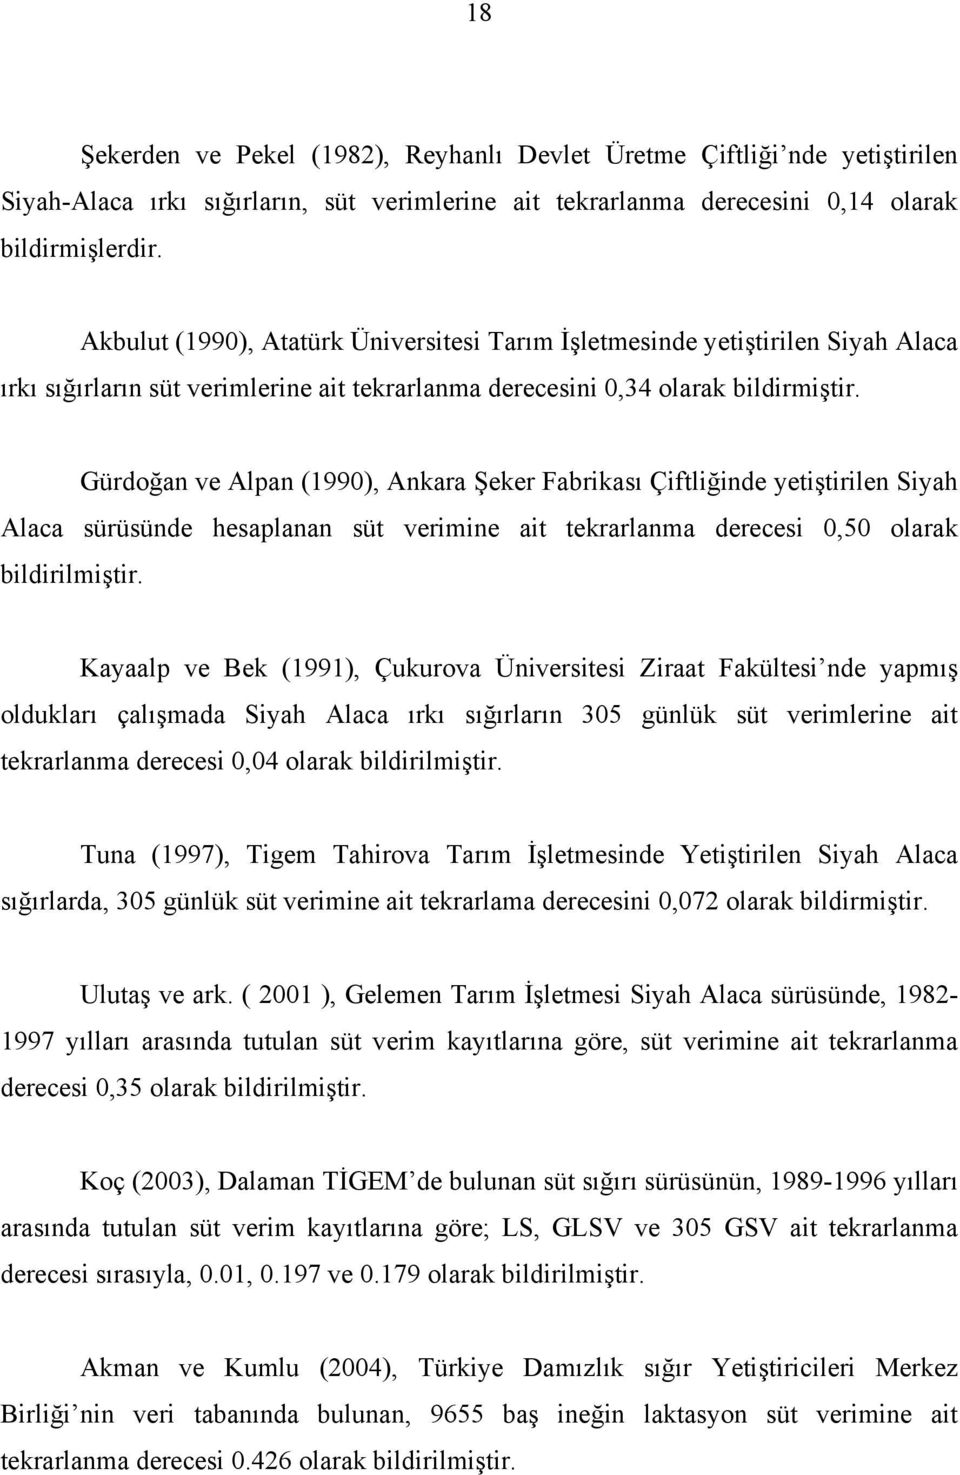 Gürdoğan ve Alpan (1990), Ankara Şeker Fabrikası Çiftliğinde yetiştirilen Siyah Alaca sürüsünde hesaplanan süt verimine ait tekrarlanma derecesi 0,50 olarak bildirilmiştir.